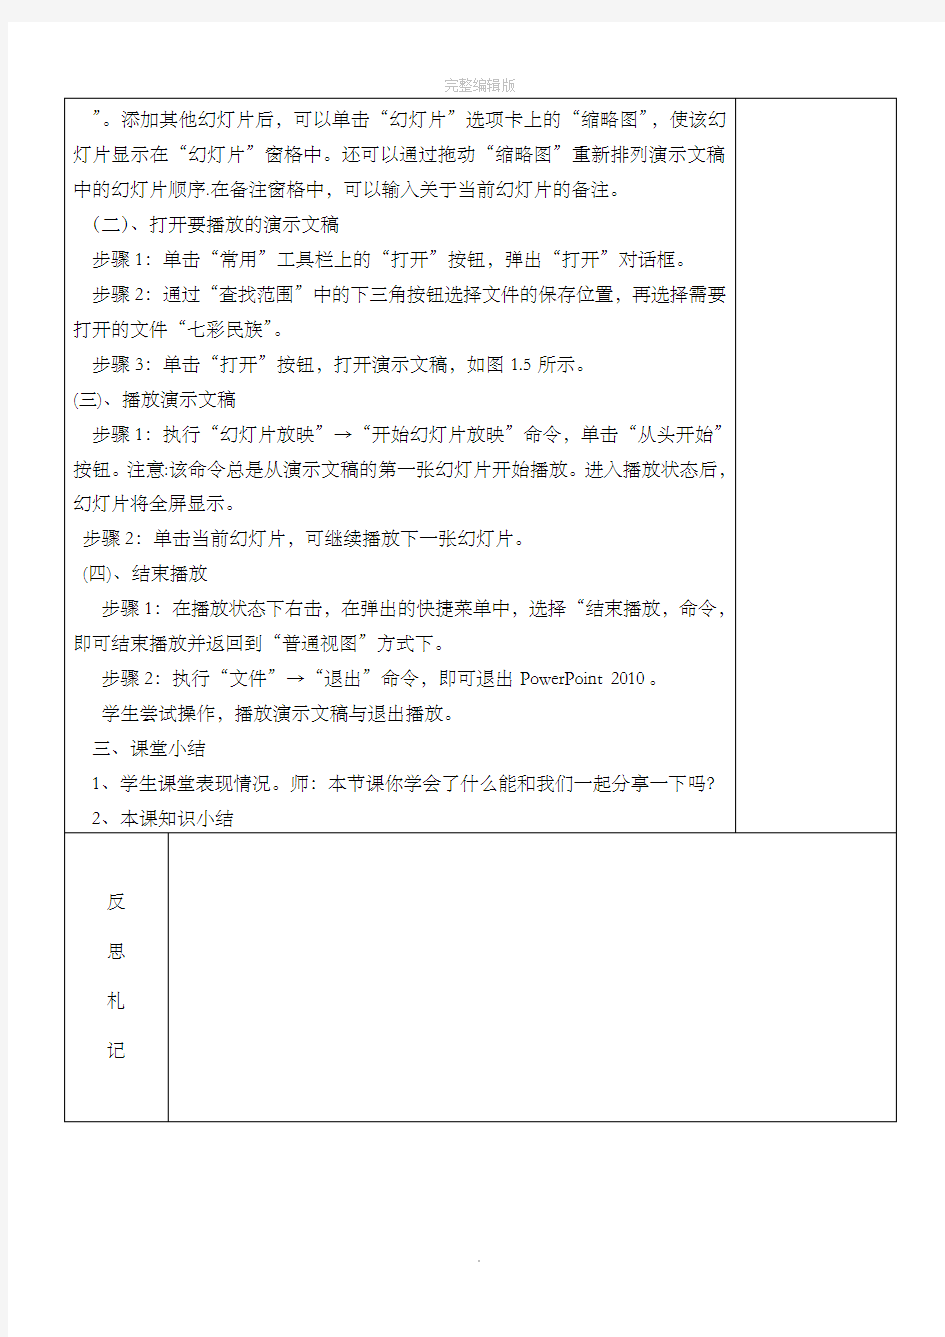 清华版小学四年级下册信息技术全套教案(全)